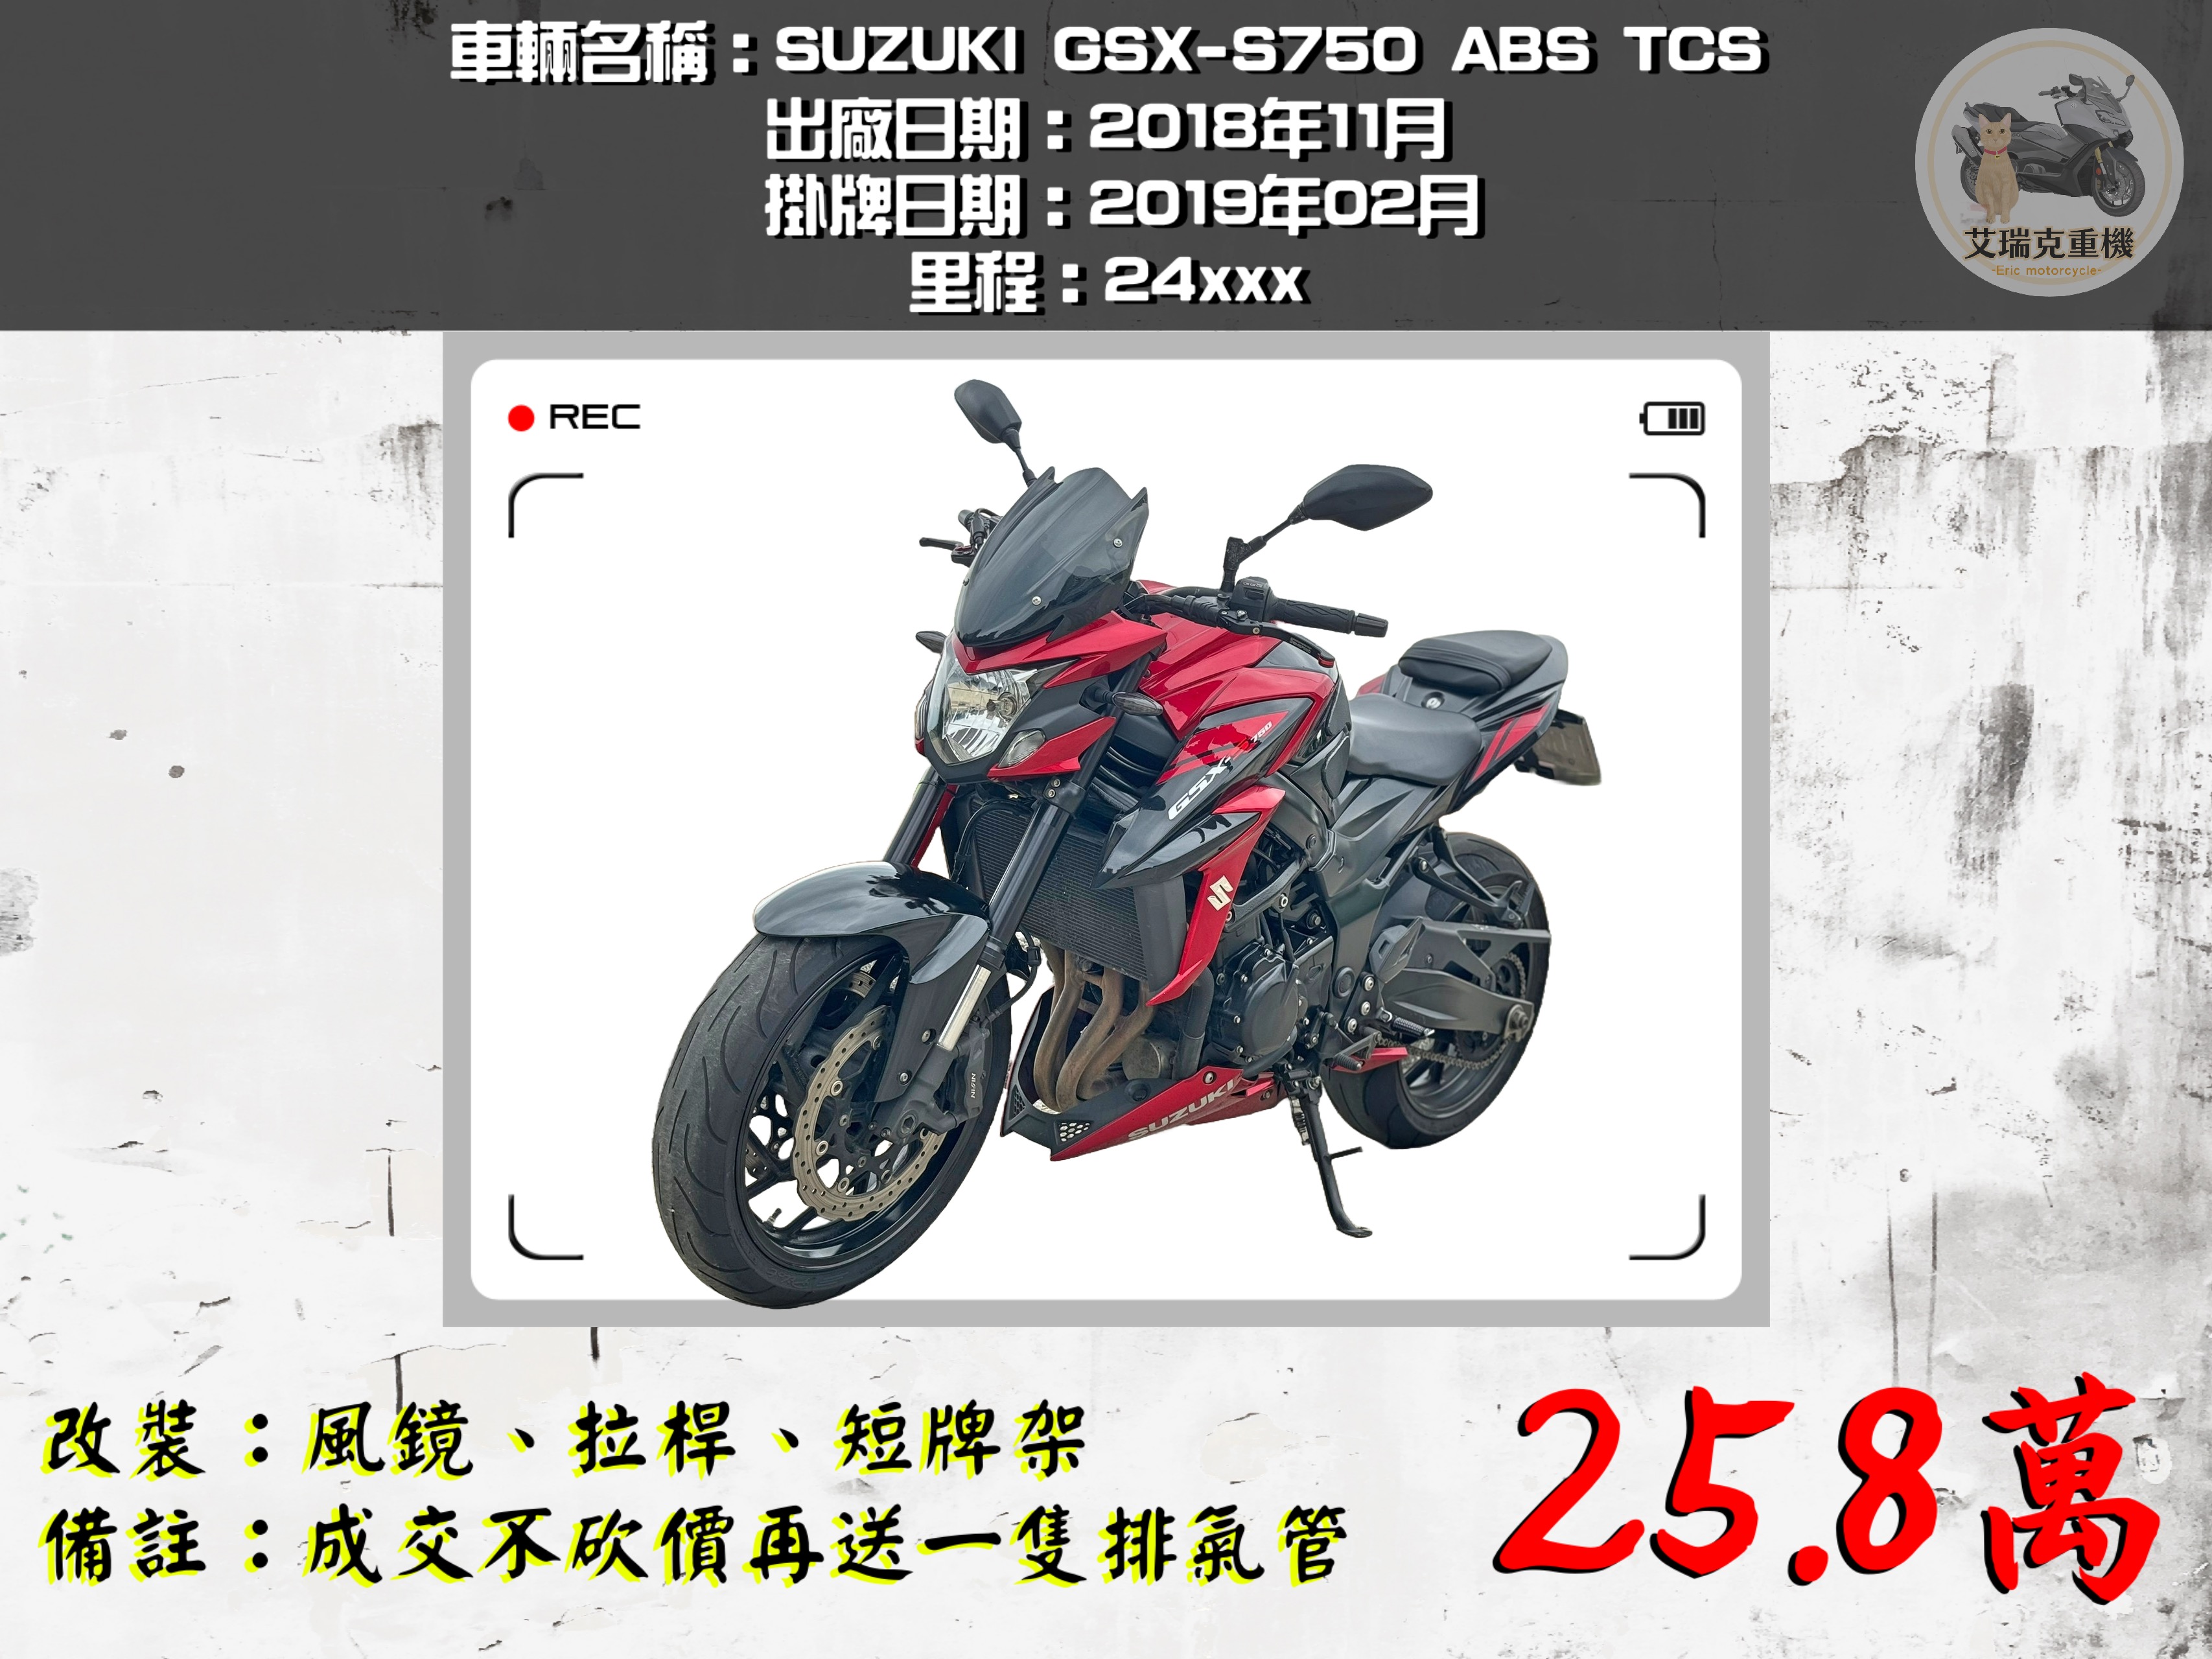 SUZUKI GSX750 - 中古/二手車出售中 SUZUKI GSX-S750 ABS TCS | 艾瑞克重機